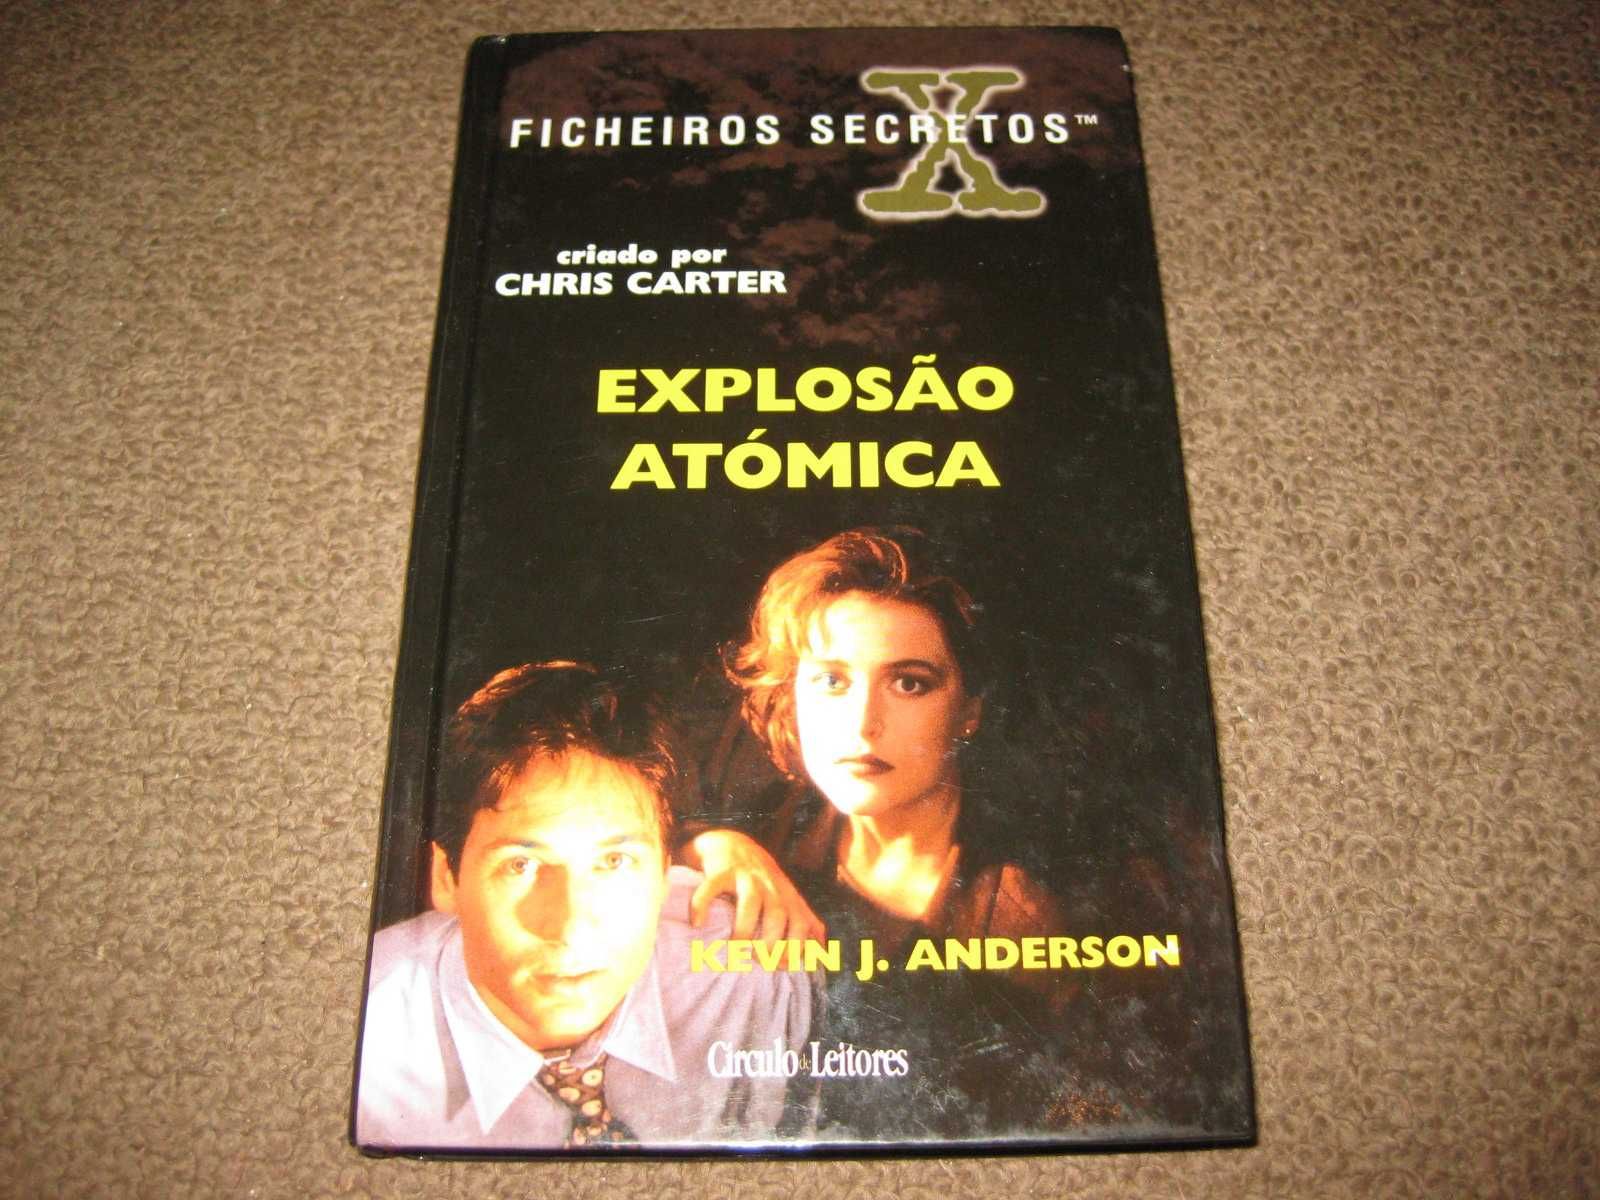 Livro Ficheiros Secretos "Explosão Atómica" de Kevin J. Anderson